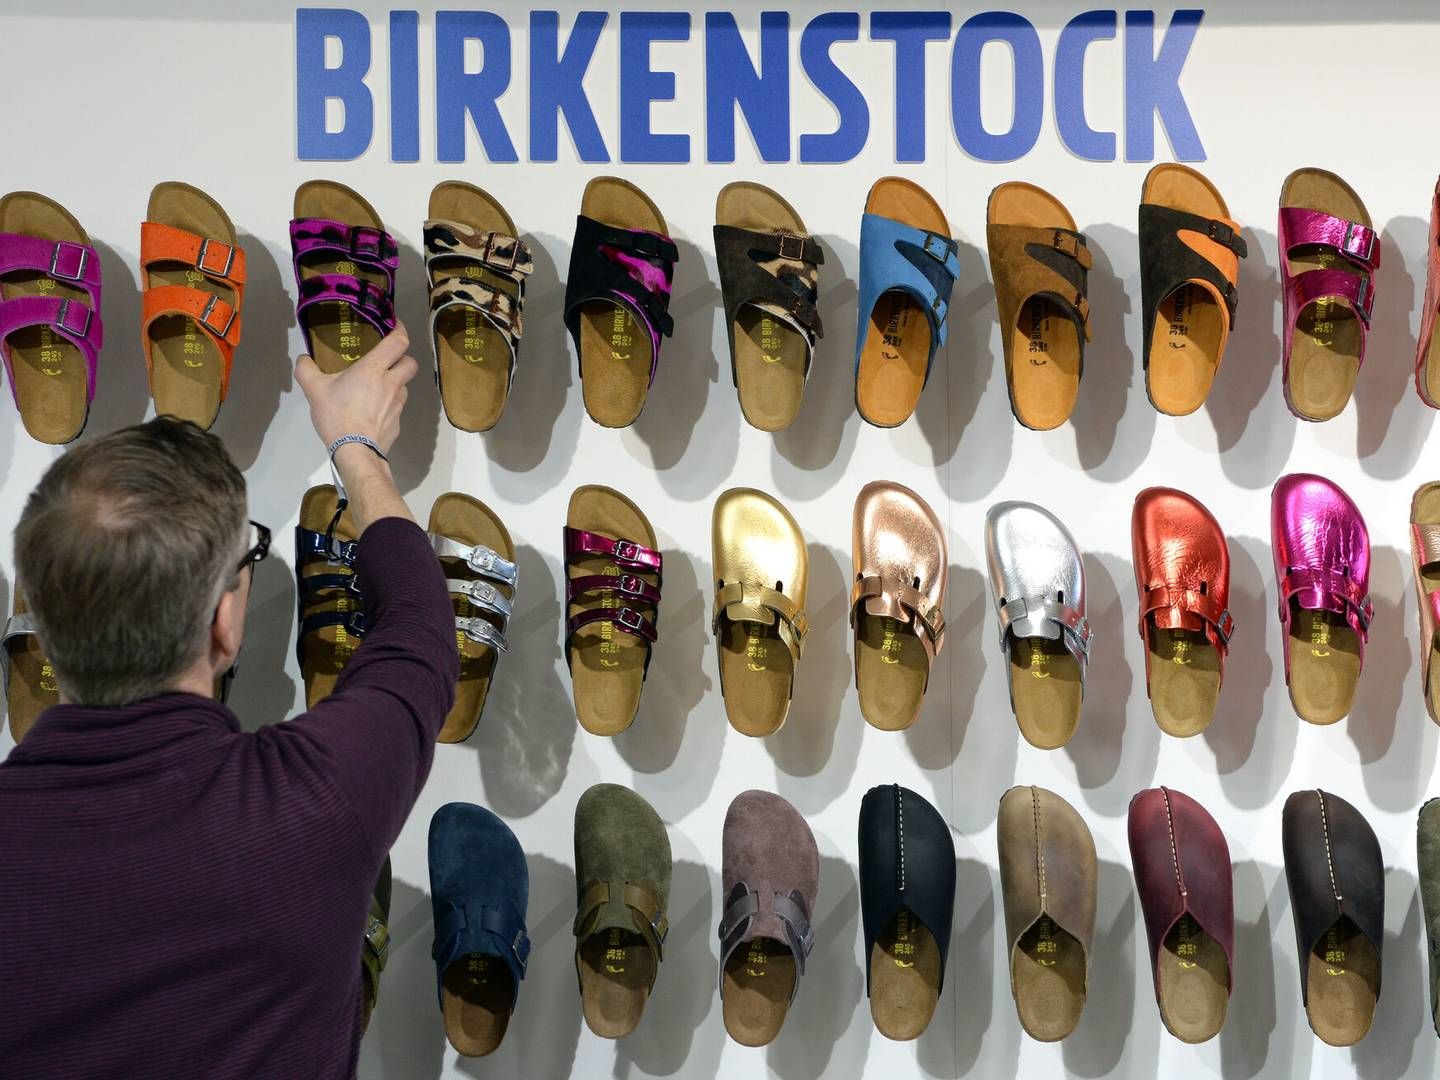 Birkenstock blev stiftet i Tyskland for knap 250 år siden. I dag har selskabet omkring 3.000 ansatte, og produktionen foregår fortsat primært på fabrikker i Tyskland. | Foto: Soeren Stache/AP/Ritzau Scanpix